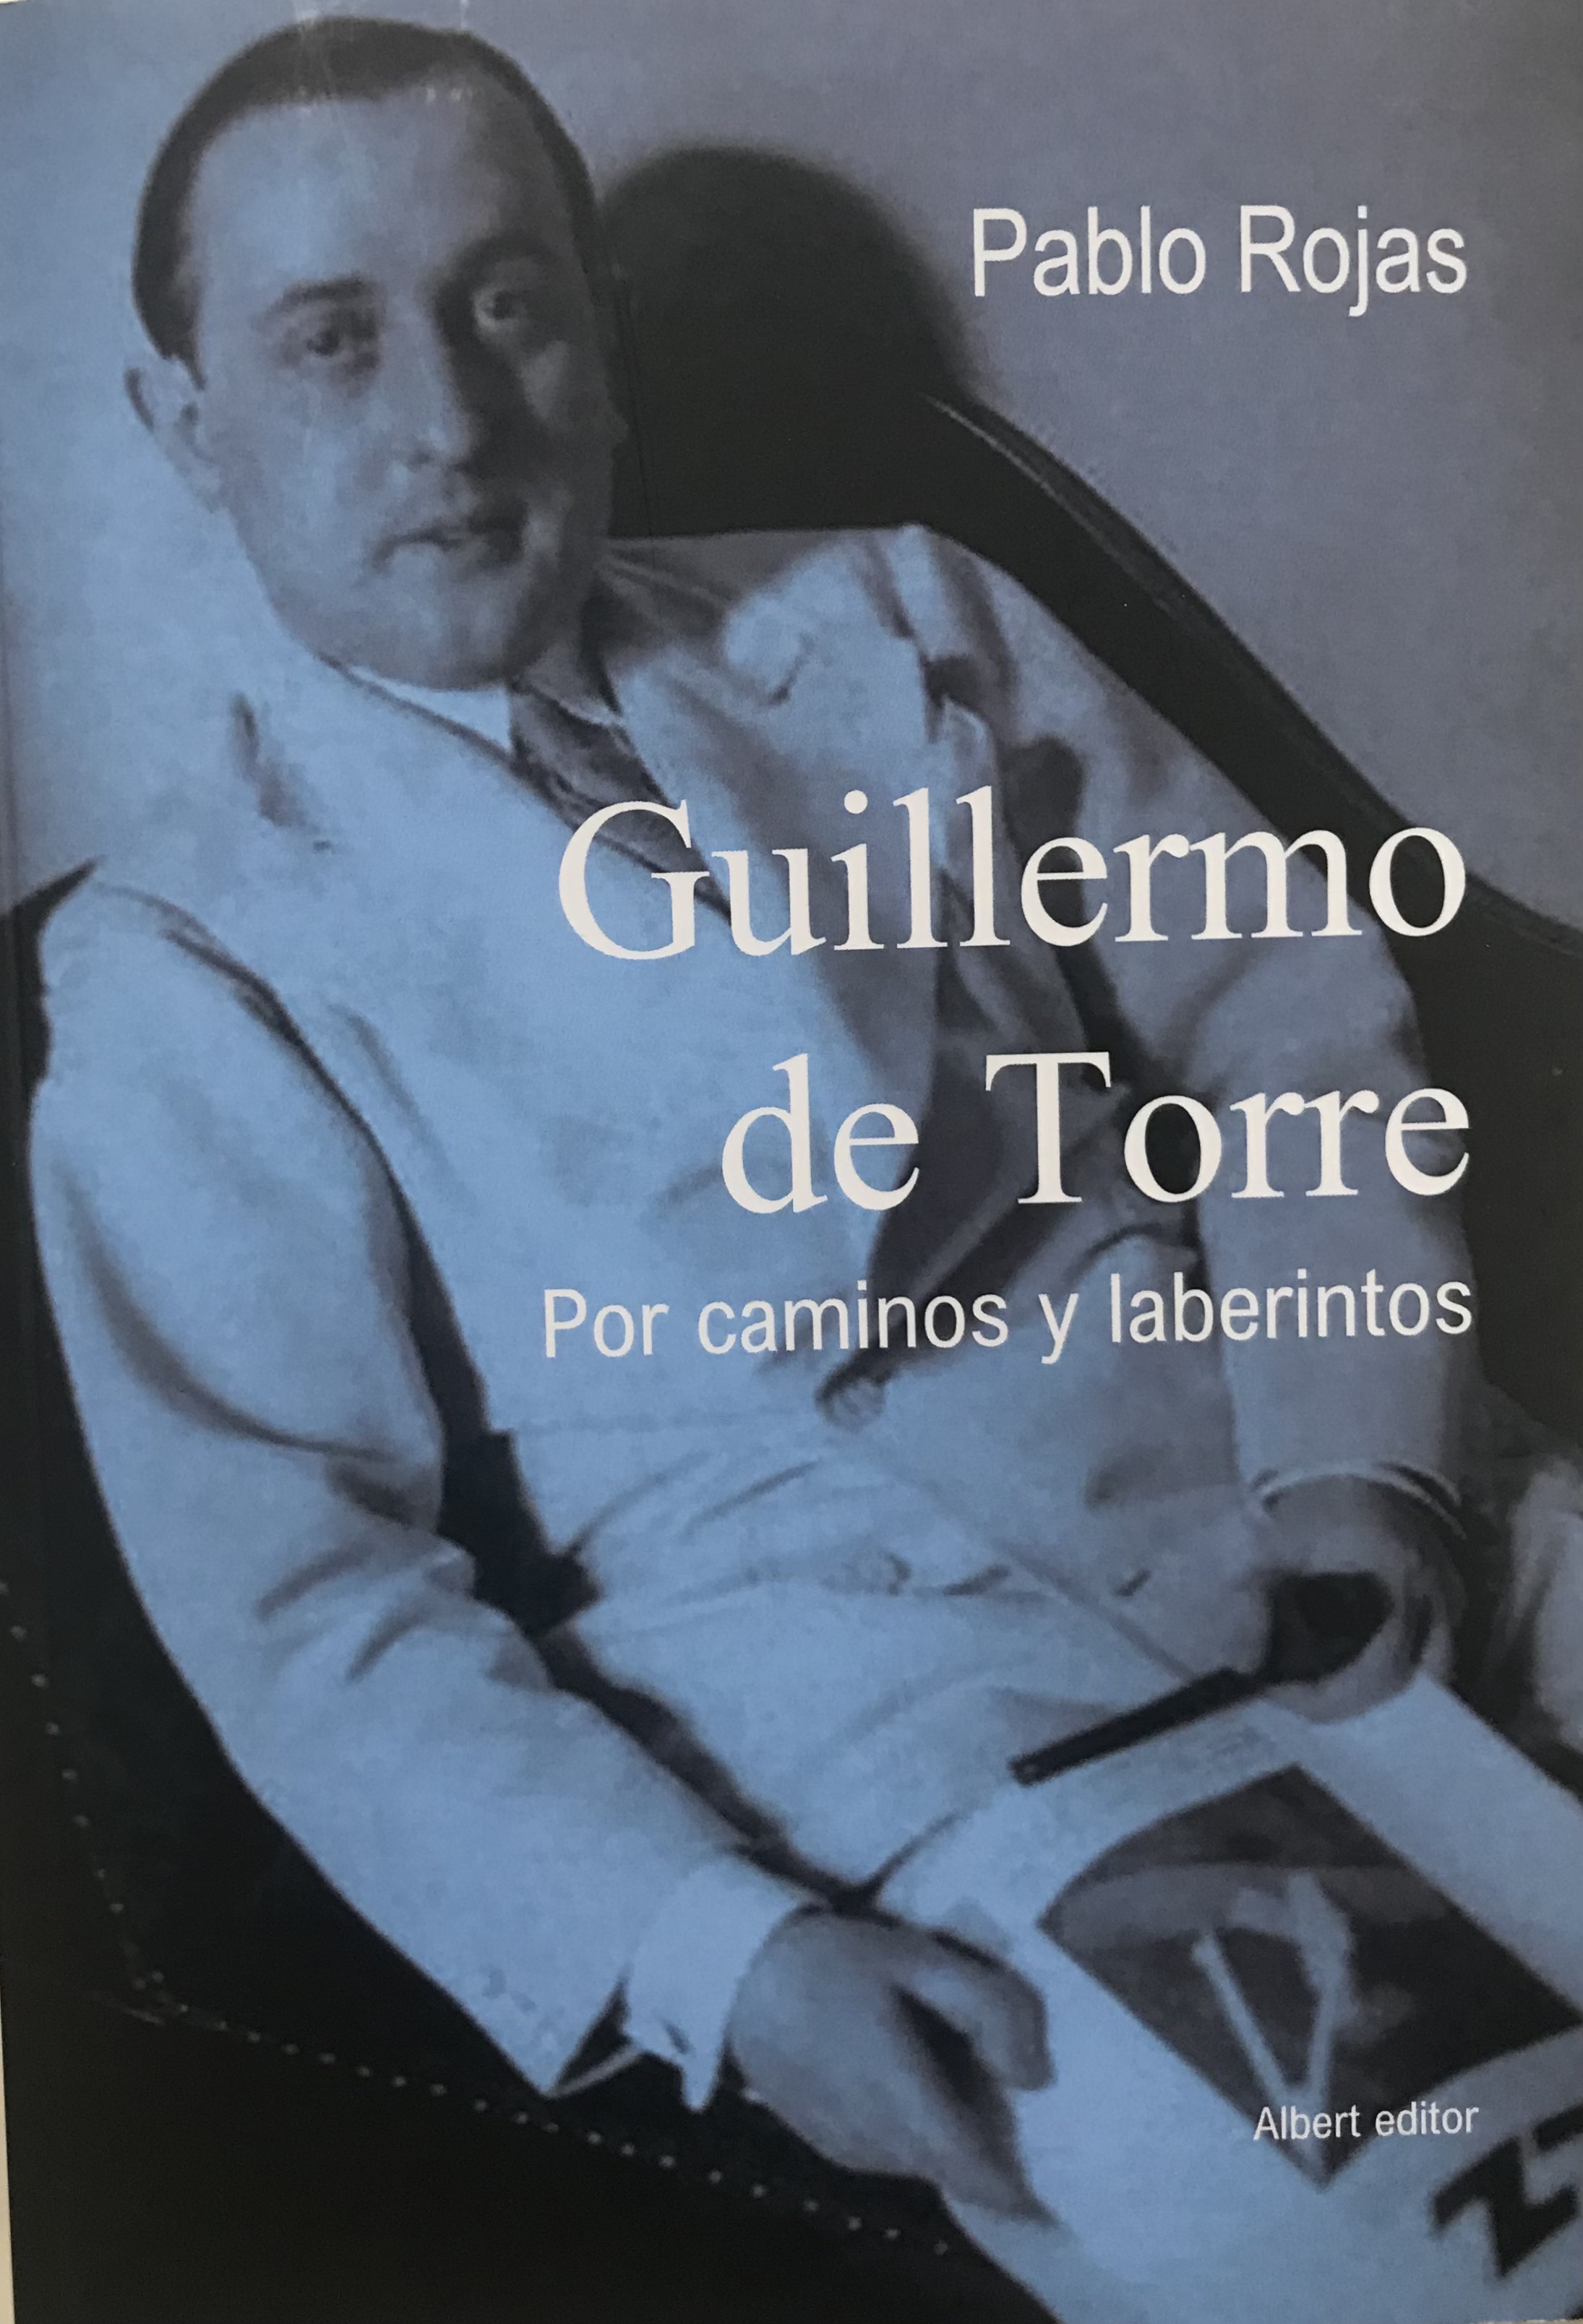 Imagen de portada del libro Guillermo de Torre